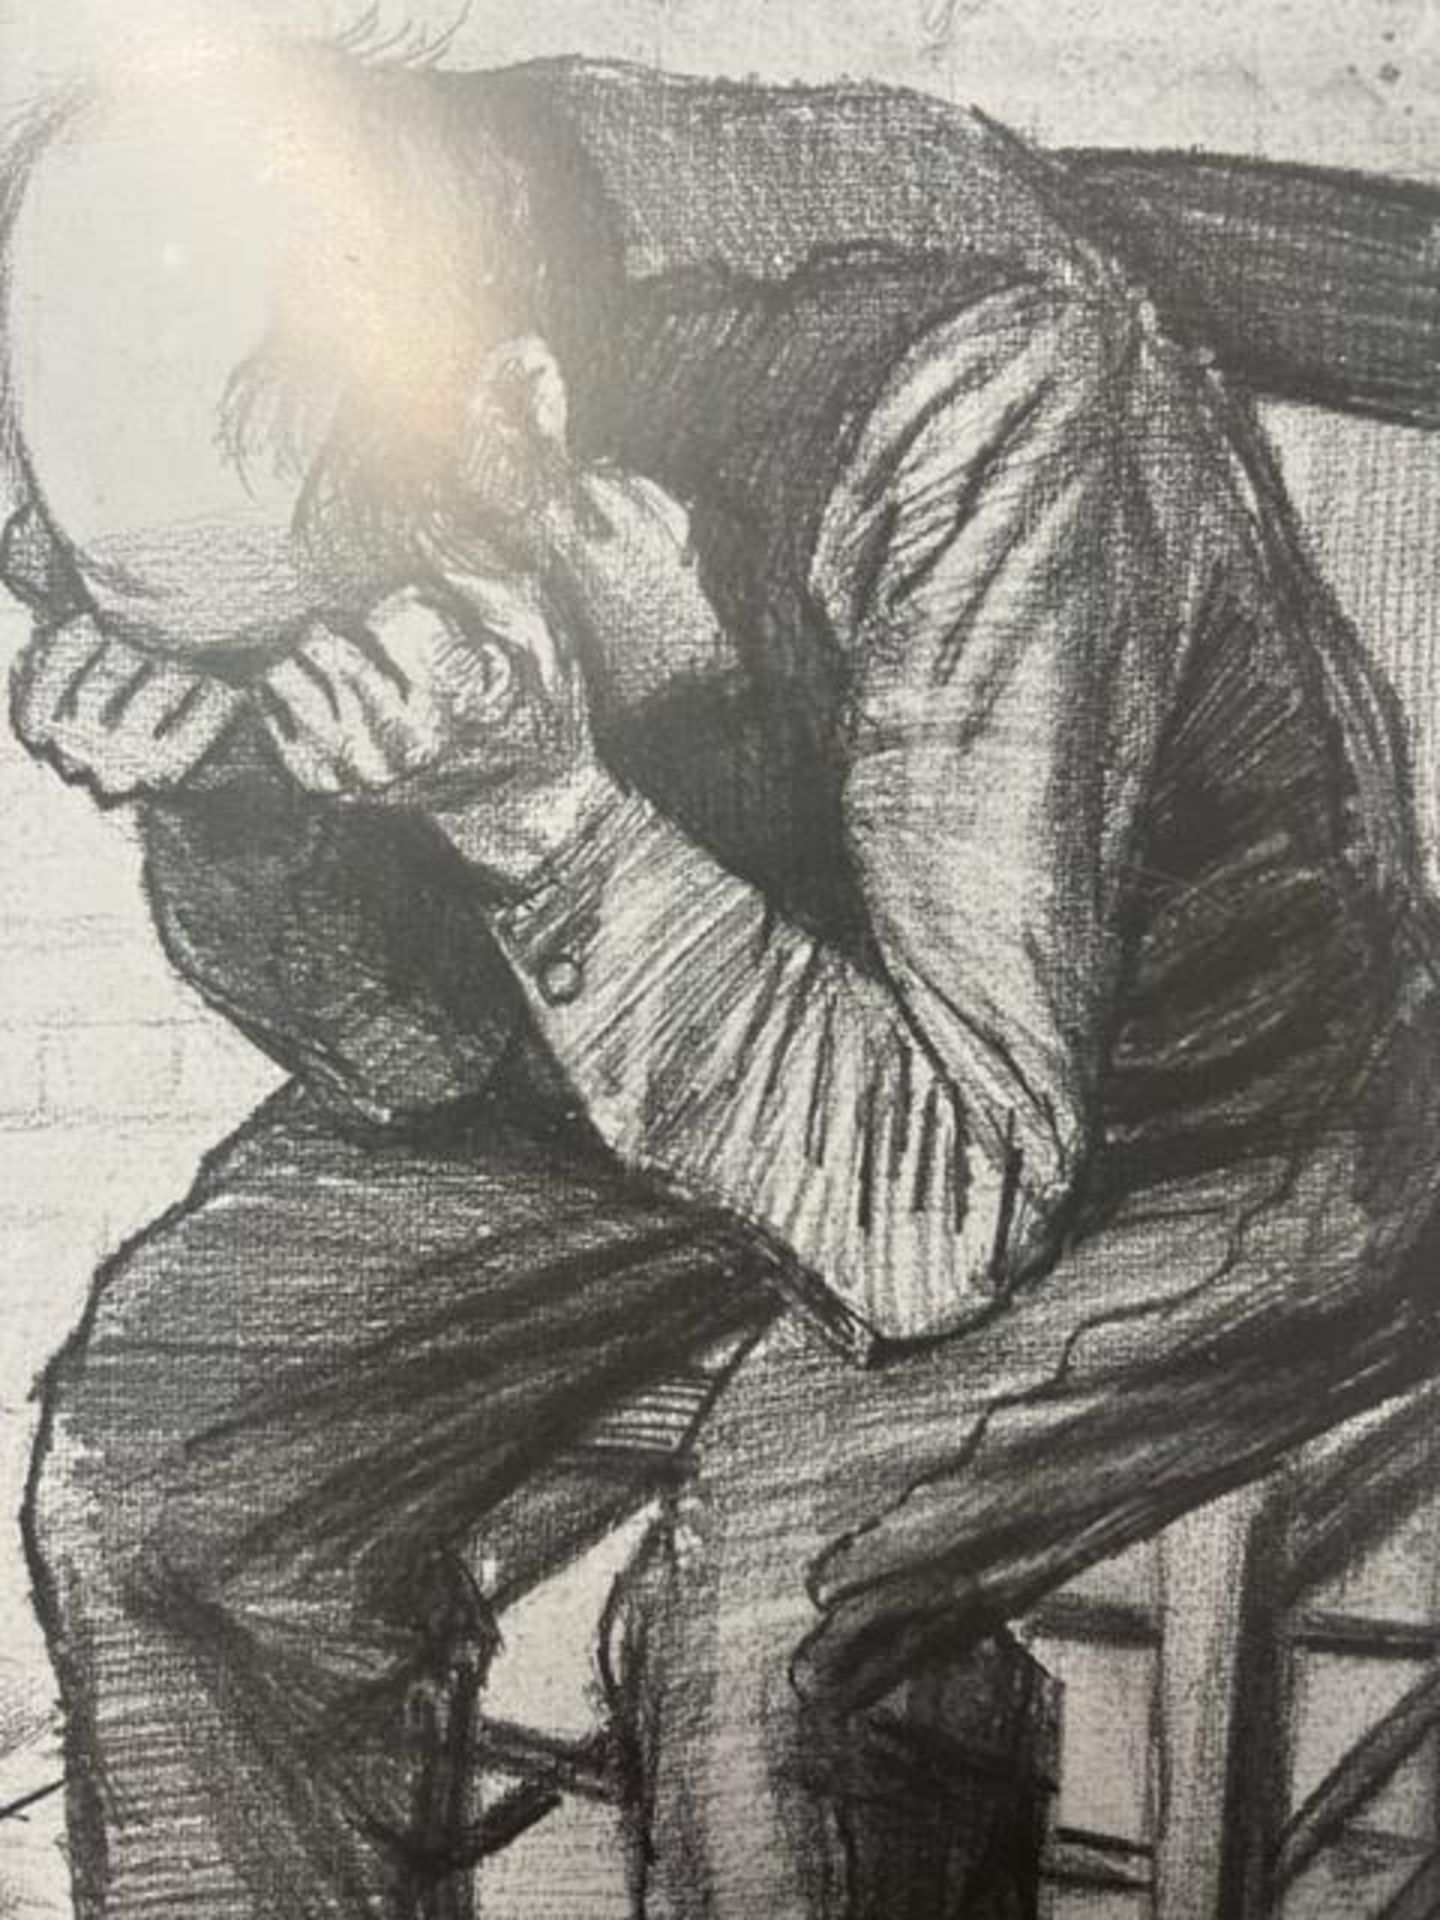 Vincent van Gogh "Old Man in Grief" Print. - Bild 2 aus 6